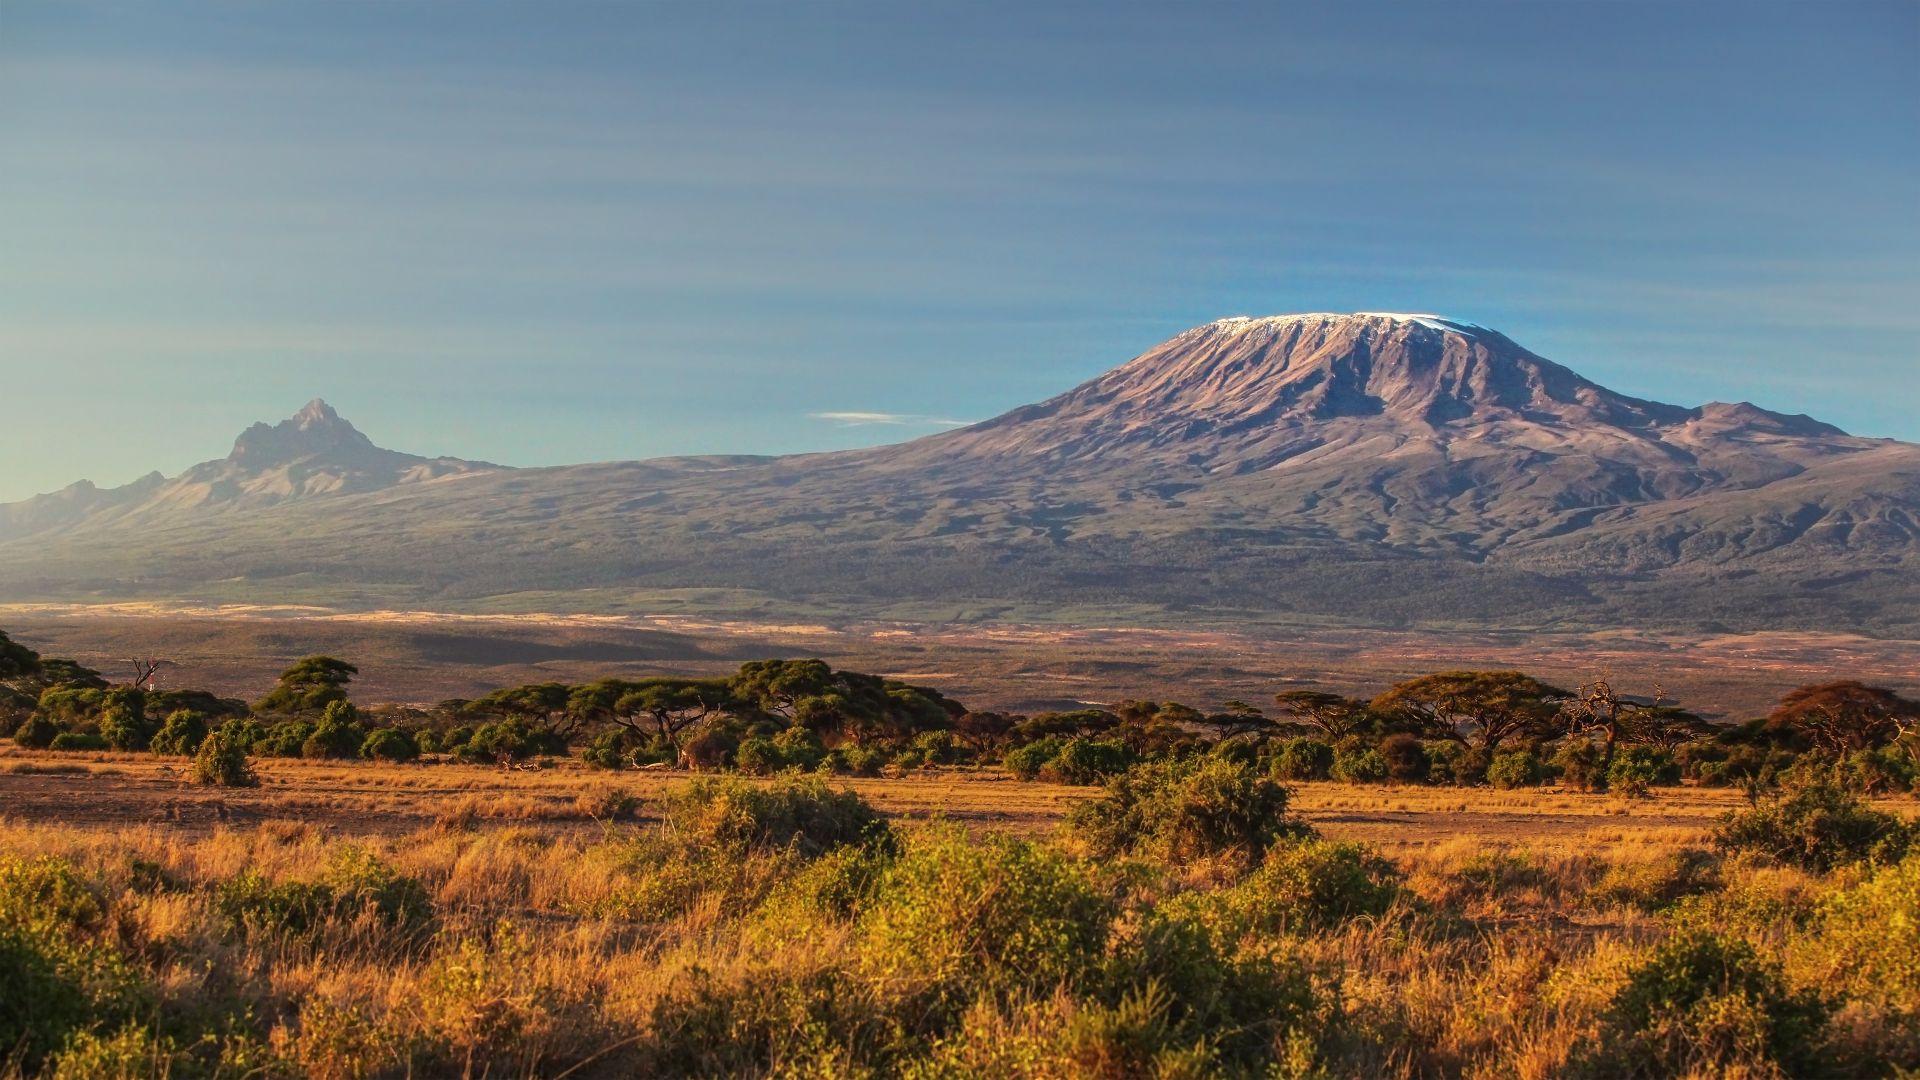 Il Monte Kilimanjaro, la vetta più alta dell'Africa